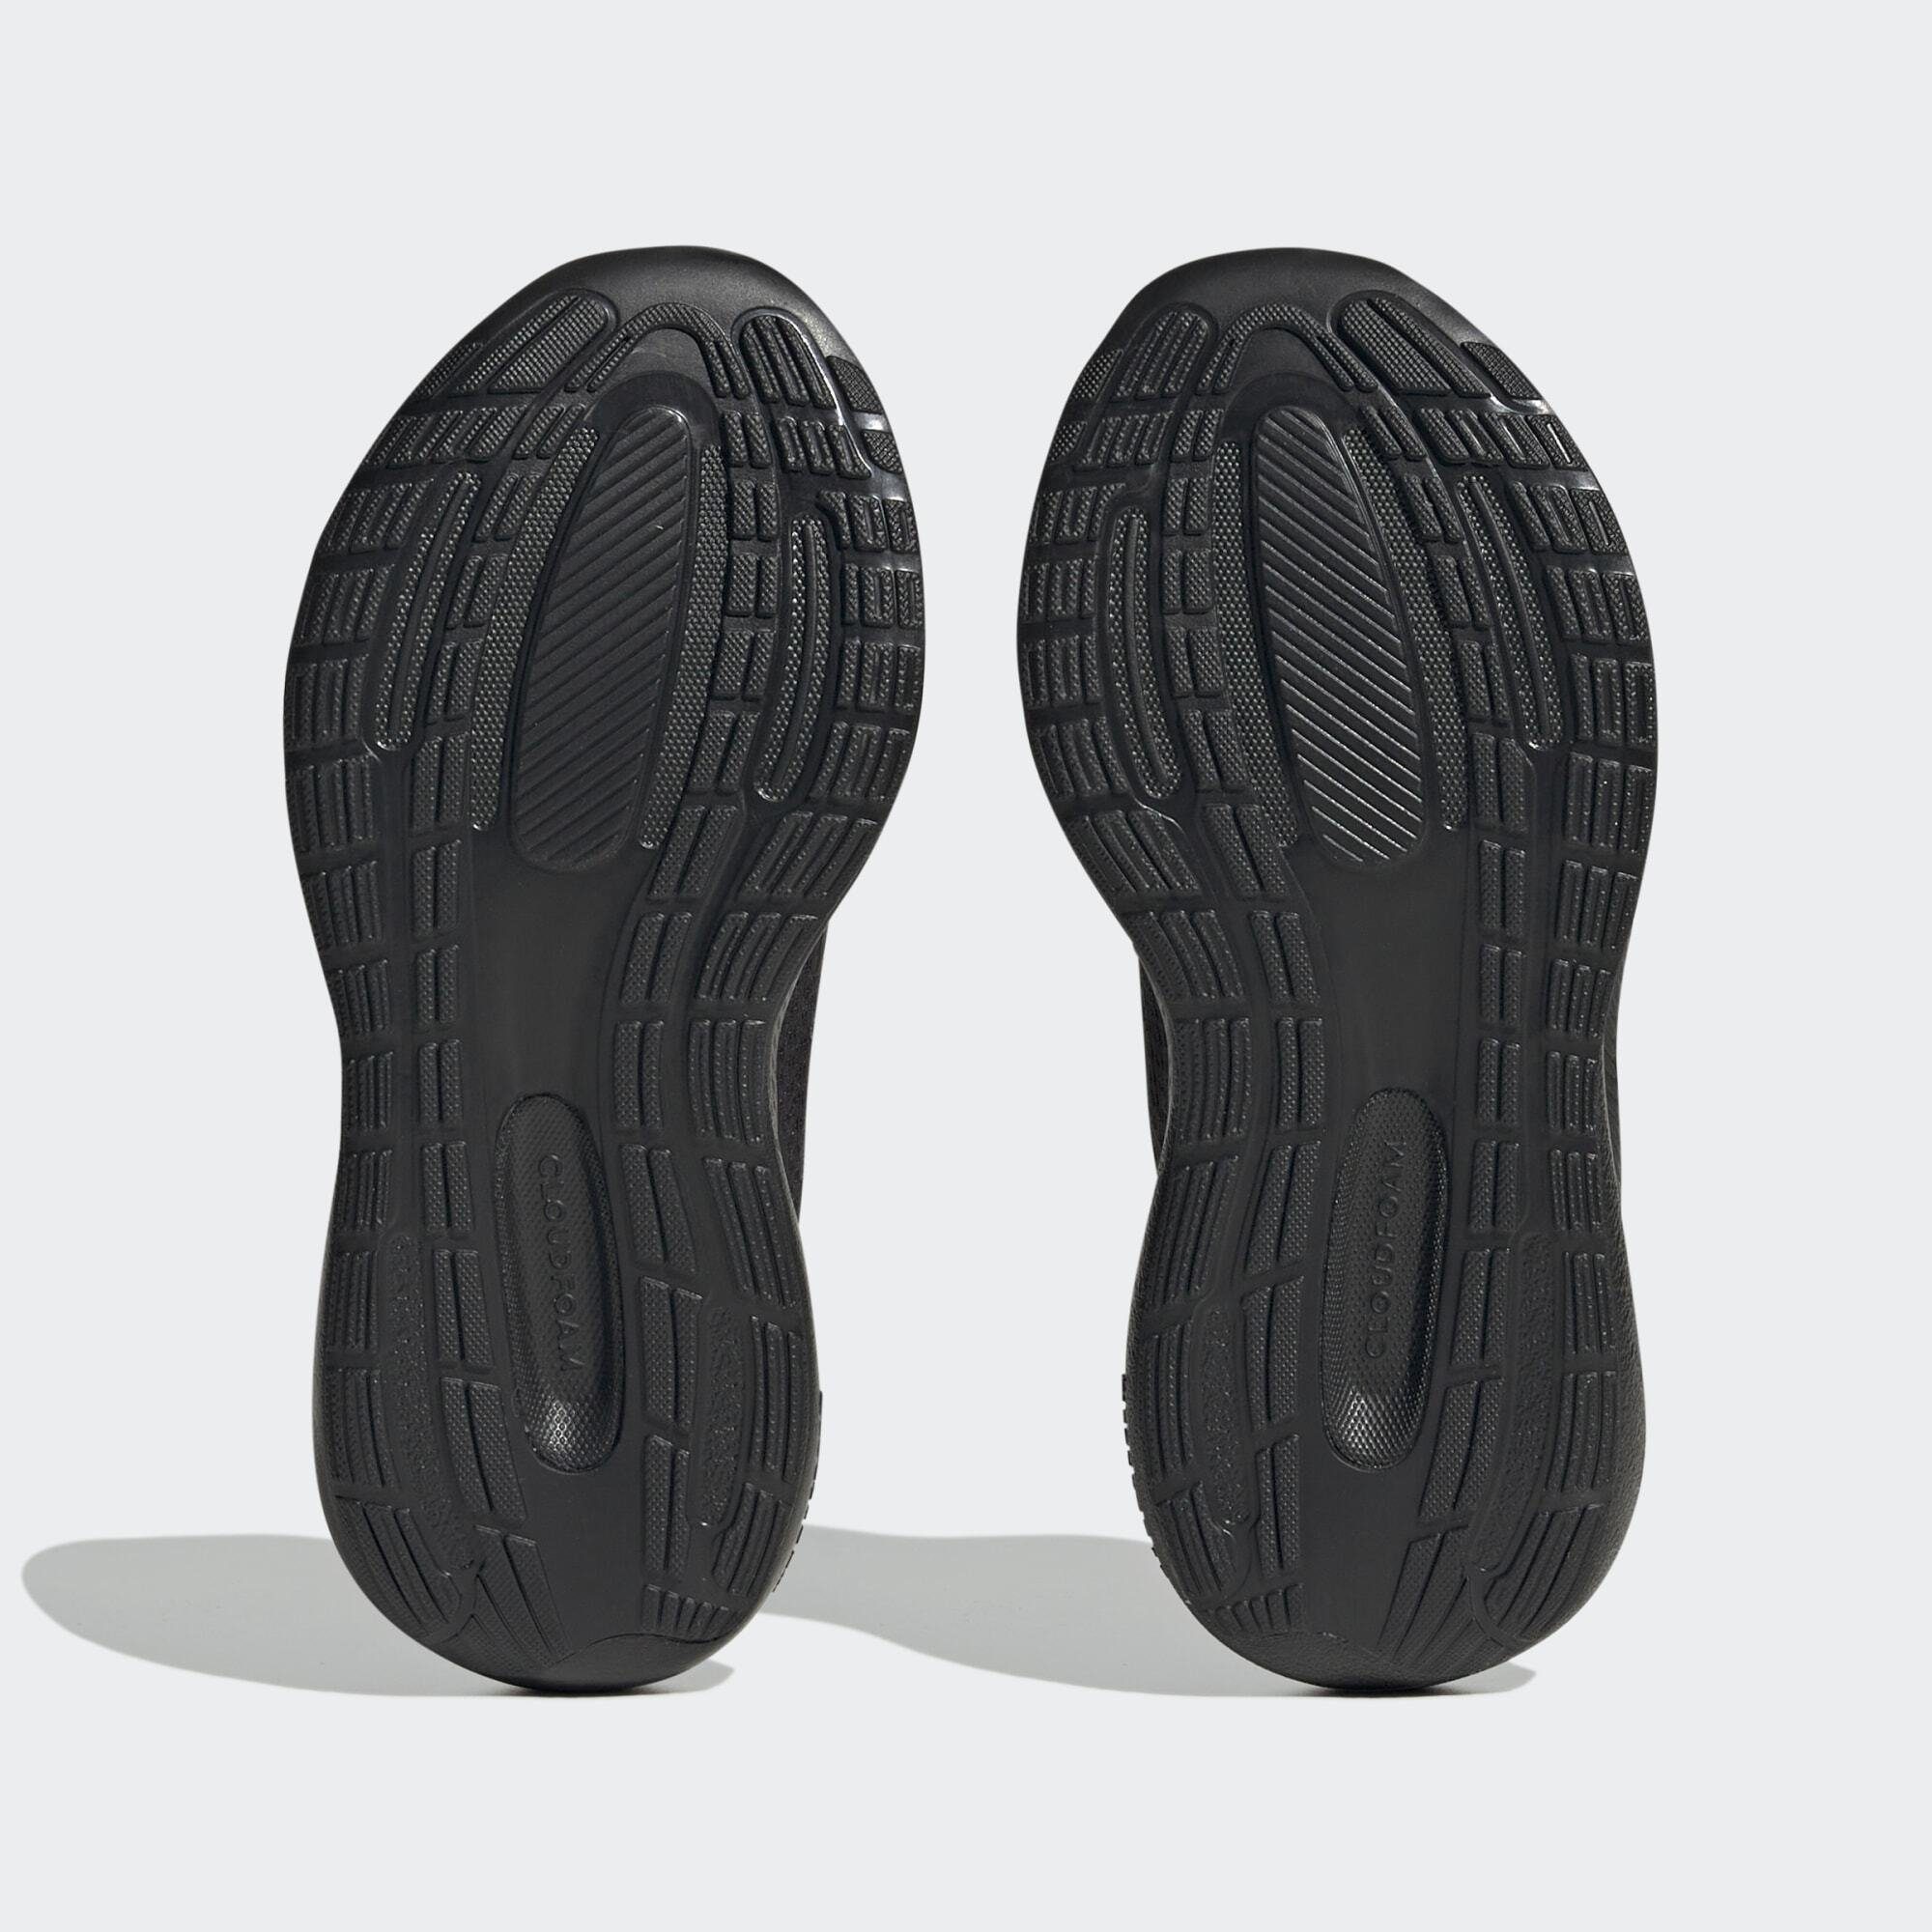 LACE RUNFALCON TOP Core Sneaker adidas / Black Black STRAP Core Sportswear SCHUH ELASTIC / 3.0 Core Black